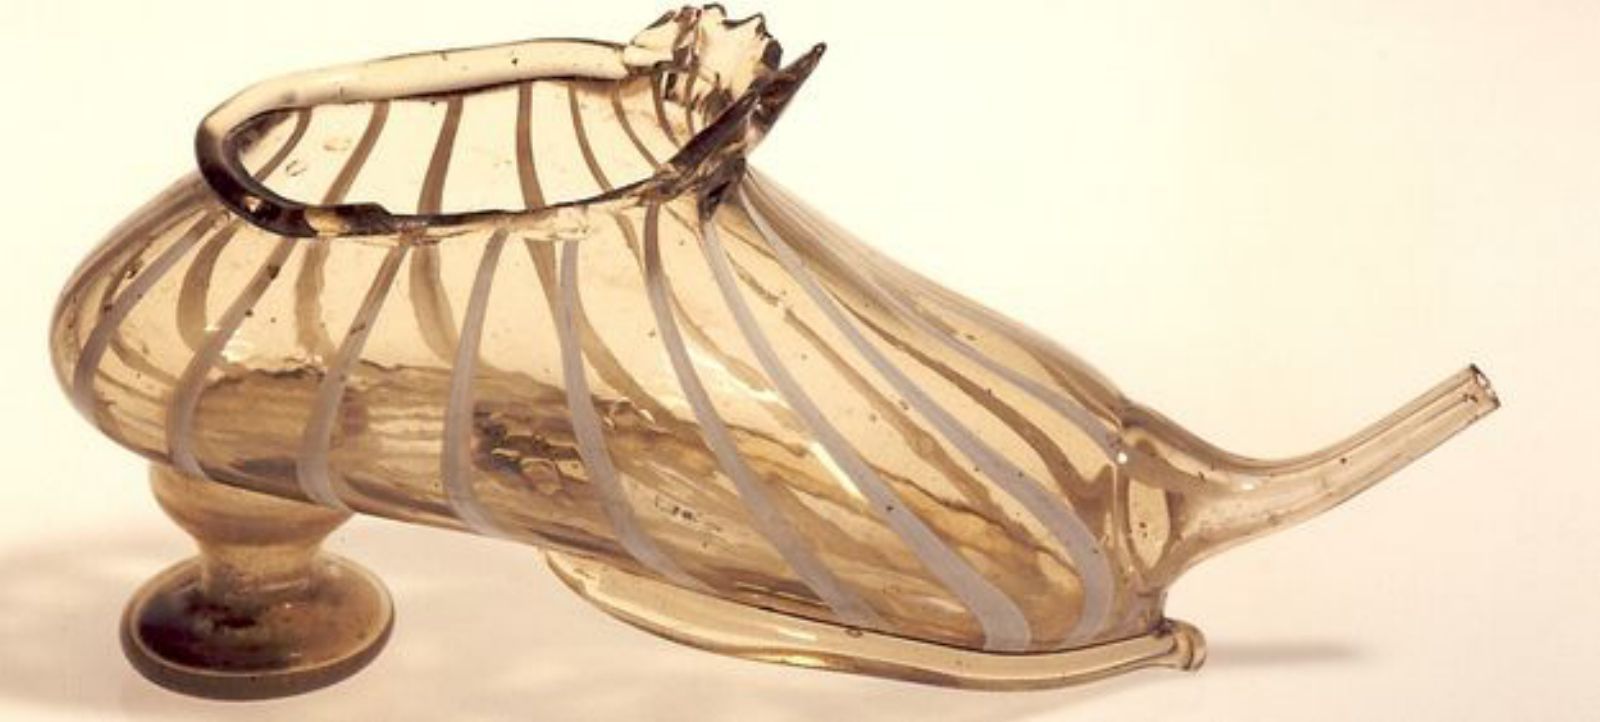 Peça catalana segle XVI-XVII feta de vidre bufat i amb forma de sabata que servia per donar líquids als malalts o infants.